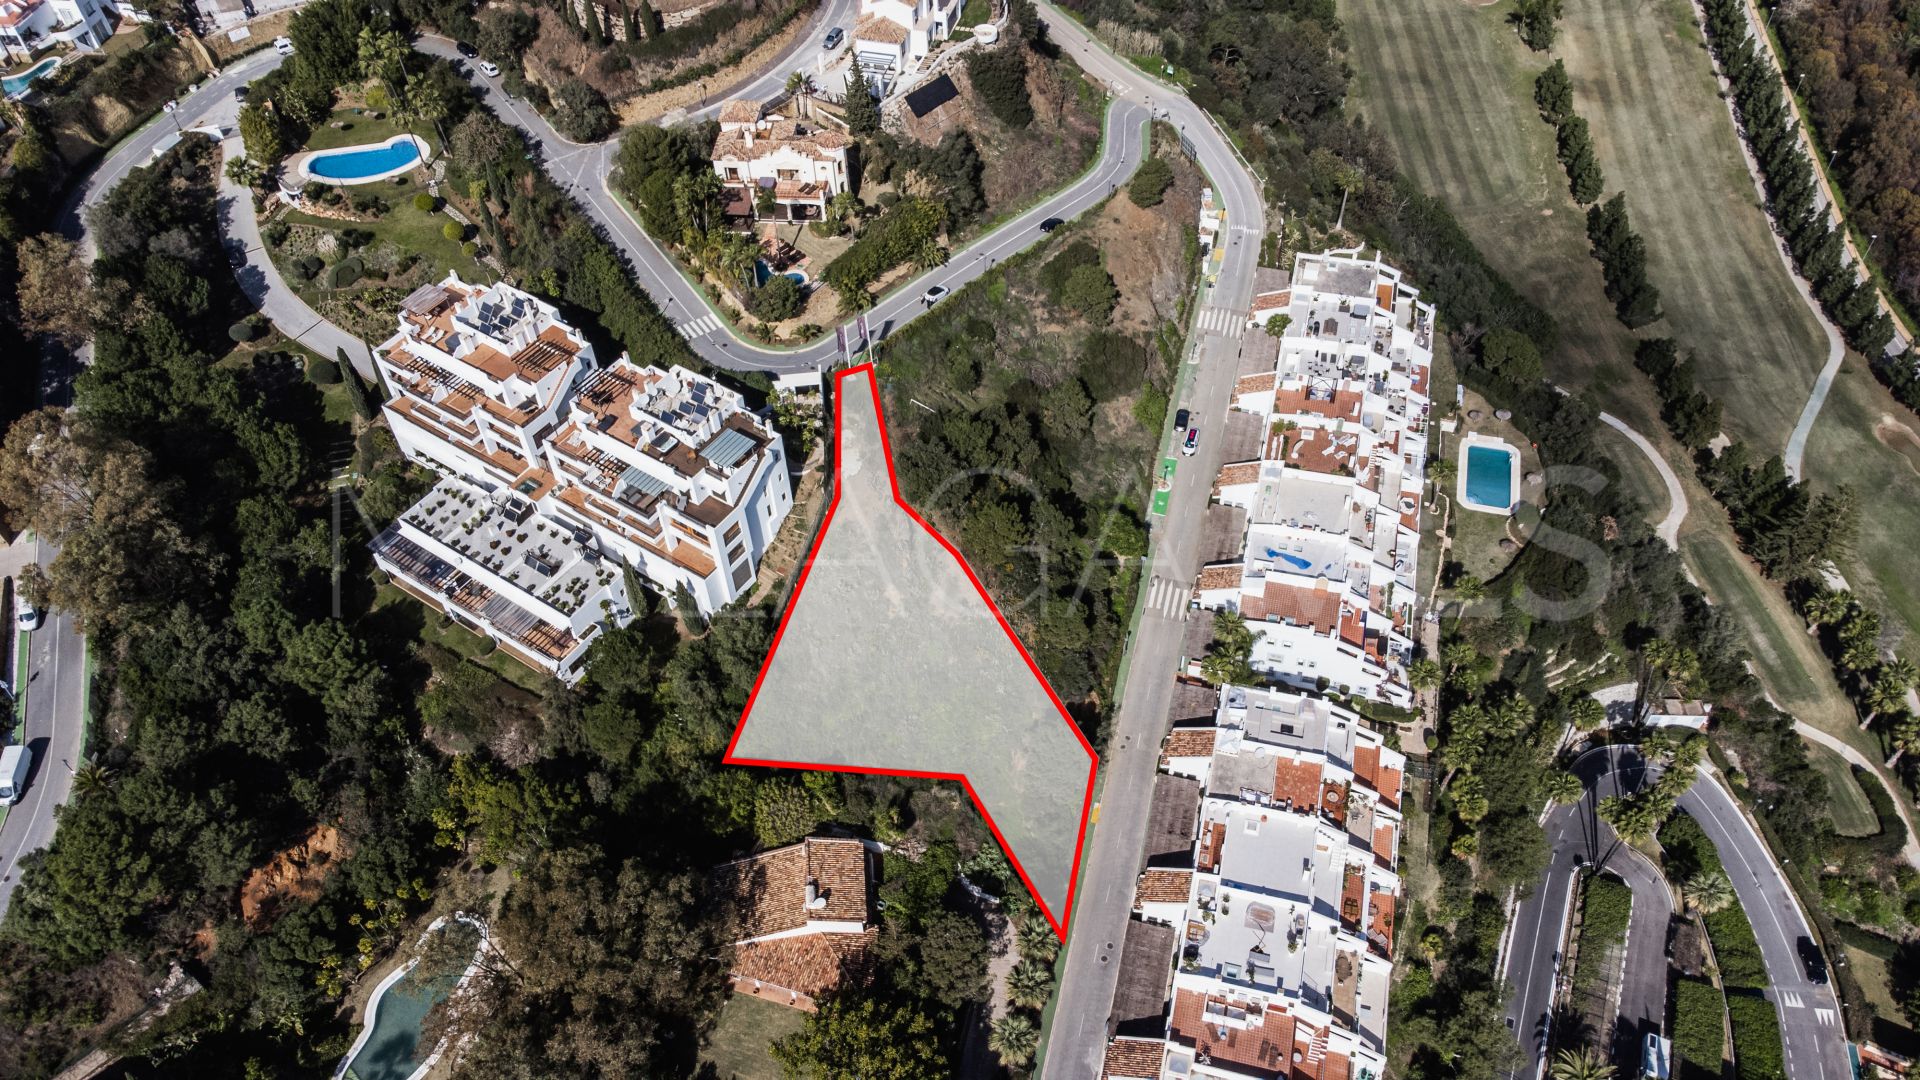 Terrain for sale in La Quinta